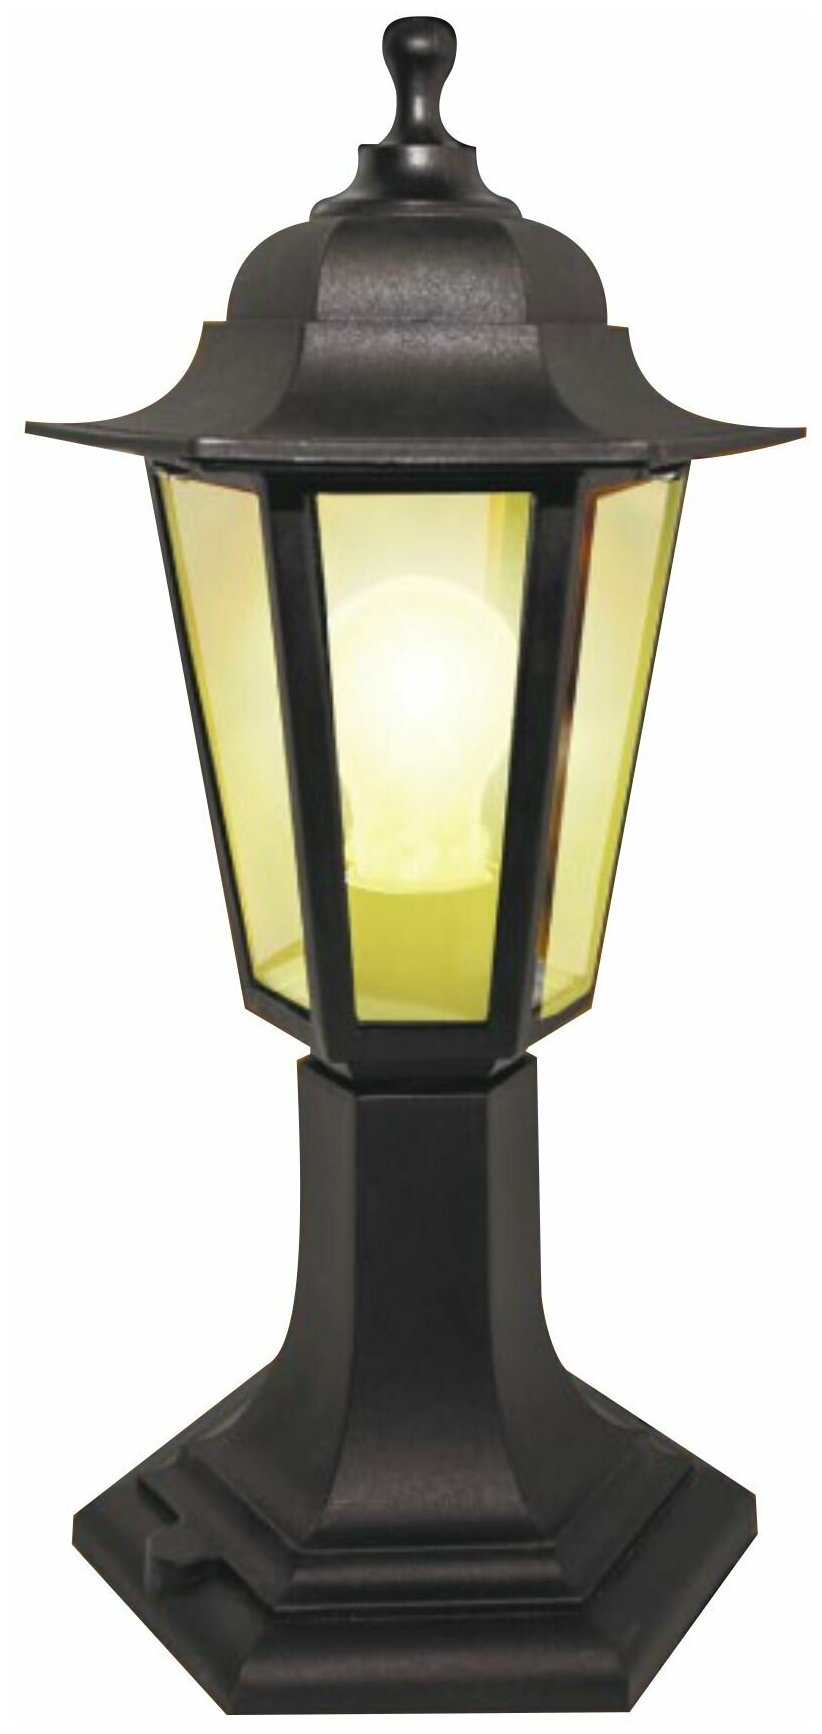 Наземный садово-парковый светильник Оскар 1 11-97. Садово-парковое освещение в виде напольного, черного, шестигранного фонаря на столбике.